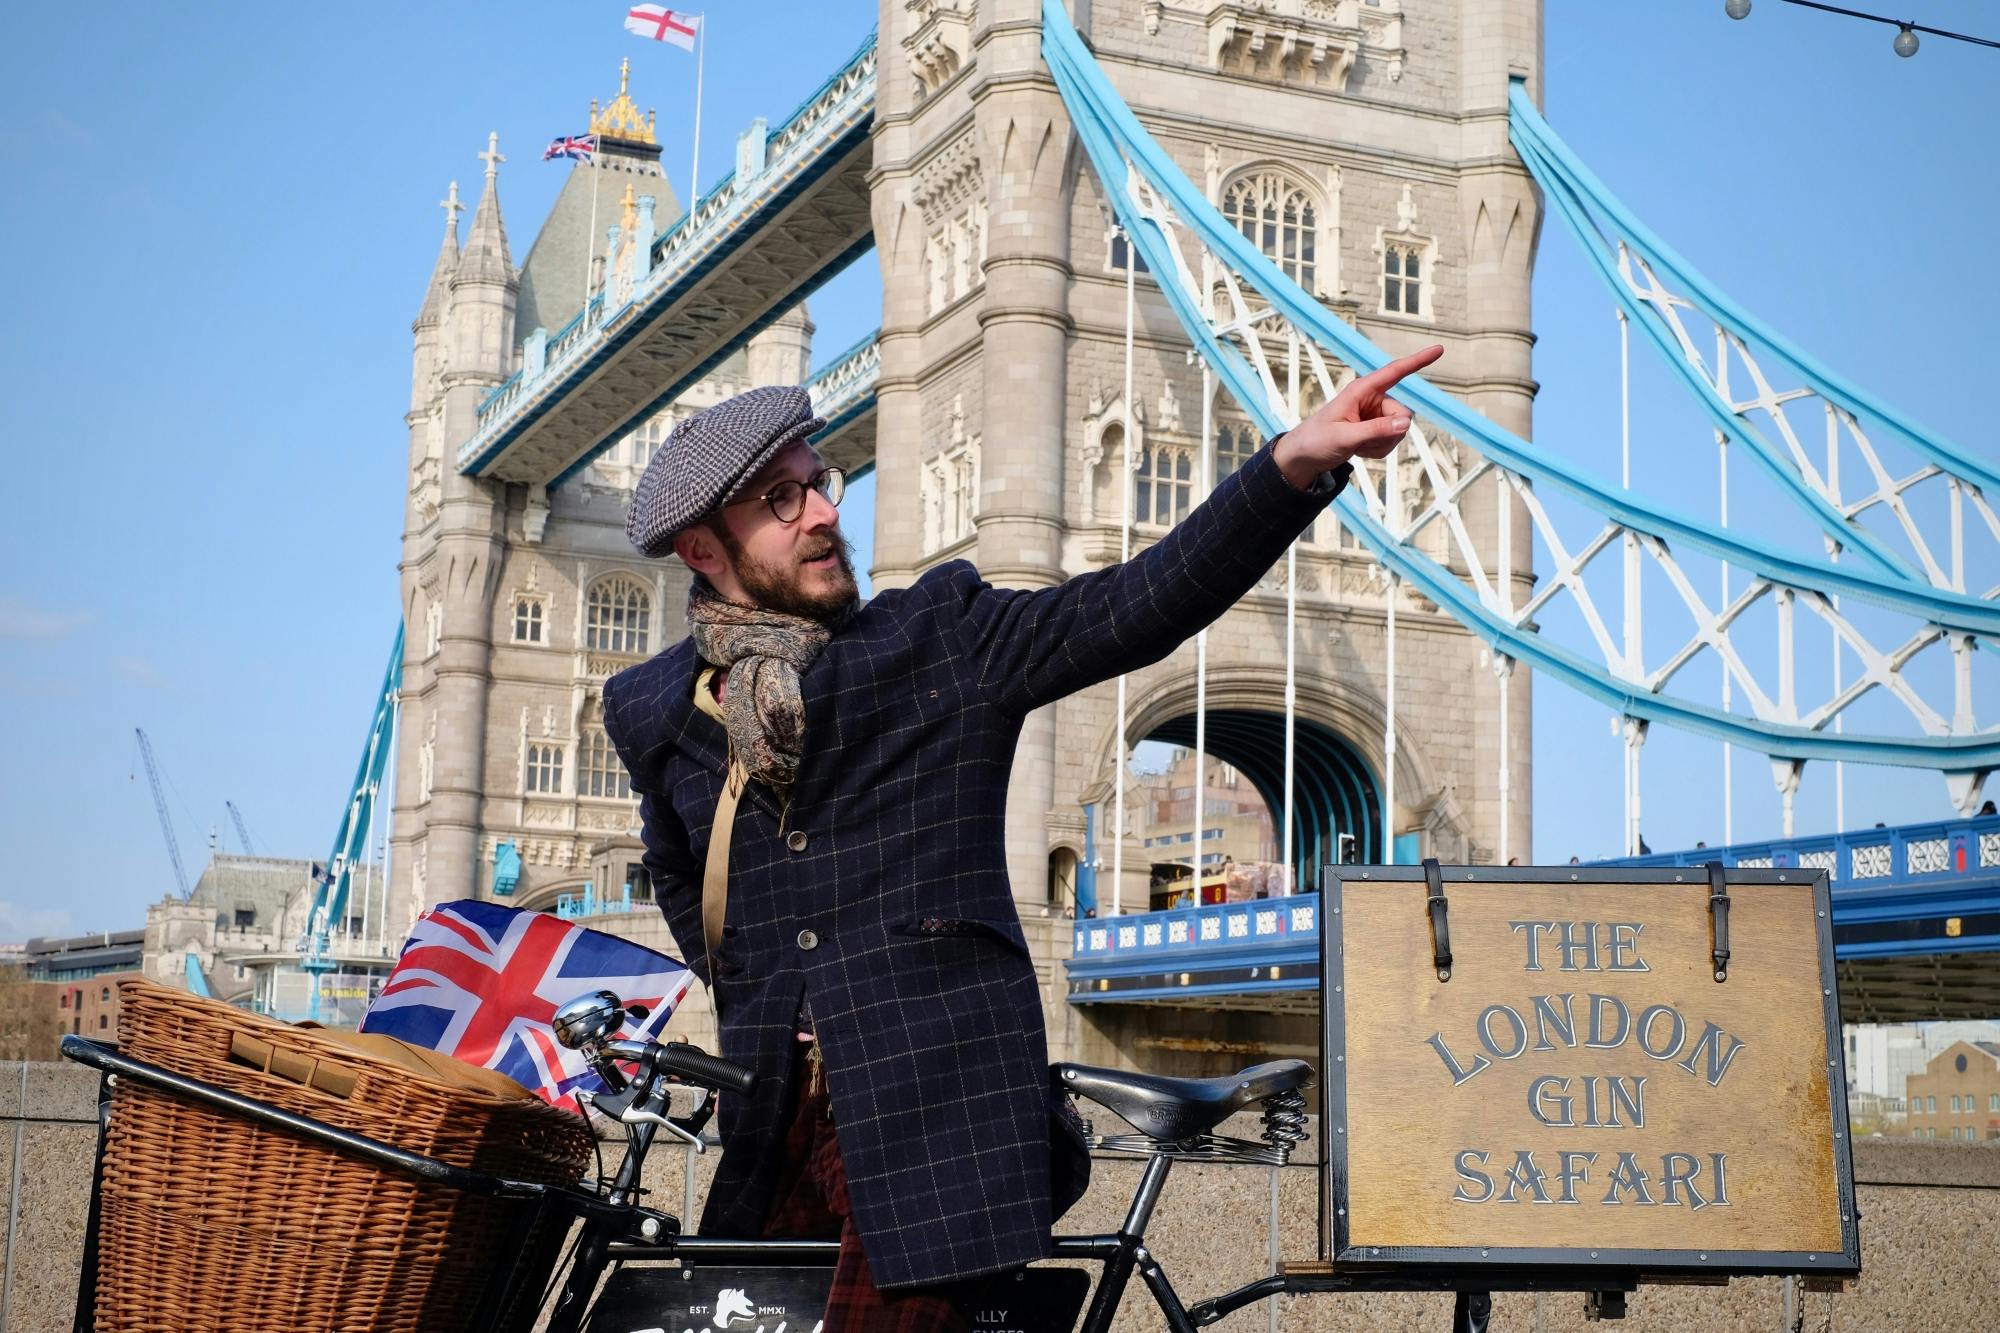 Wycieczka rowerowa z przewodnikiem „London gin safari” z degustacją ginu